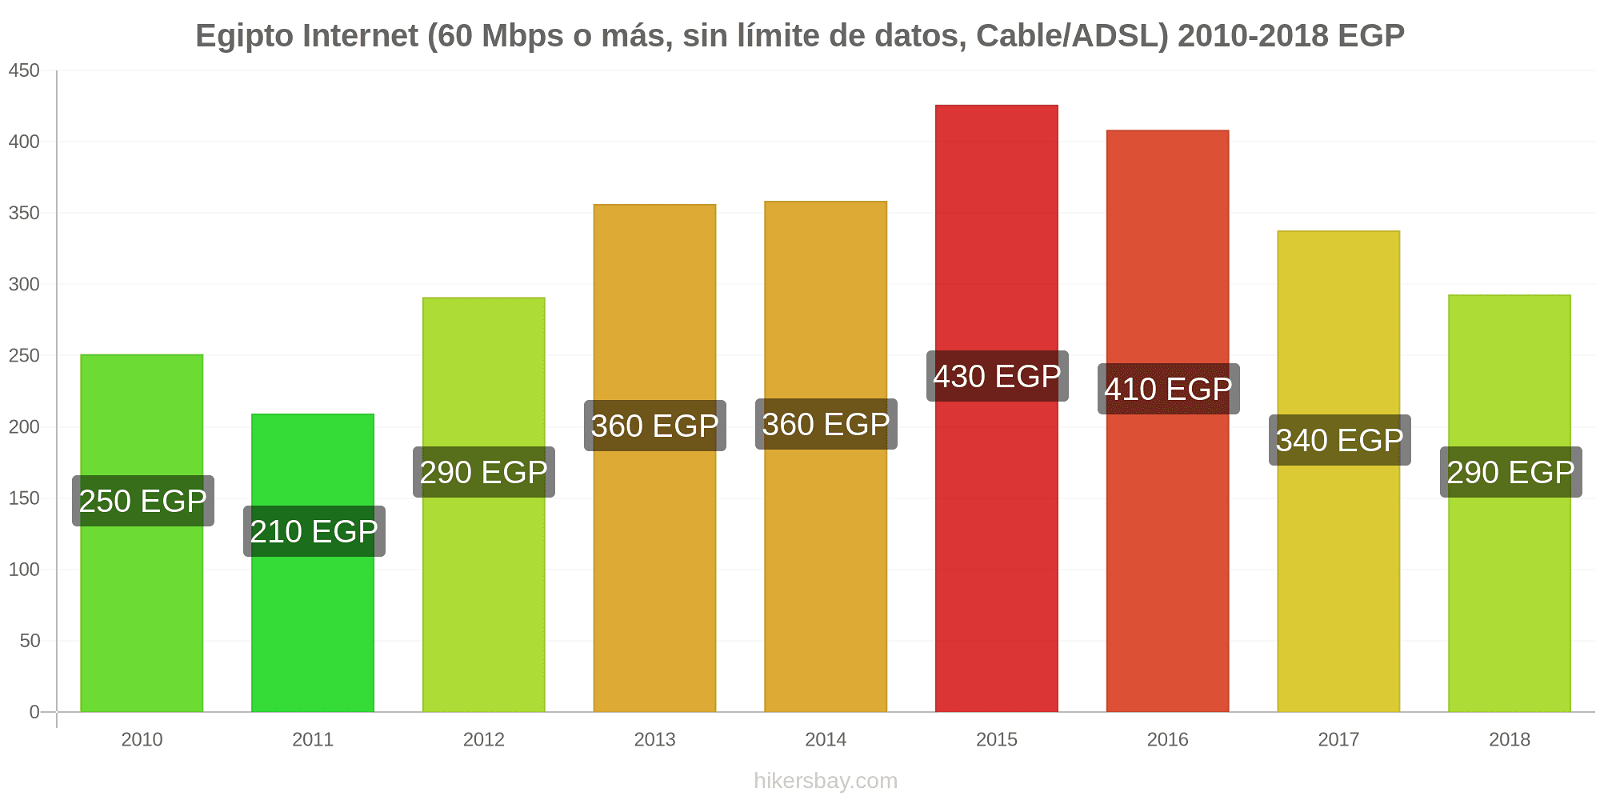 Egipto cambios de precios Internet (60 Mbps o más, datos ilimitados, cable/ADSL) hikersbay.com